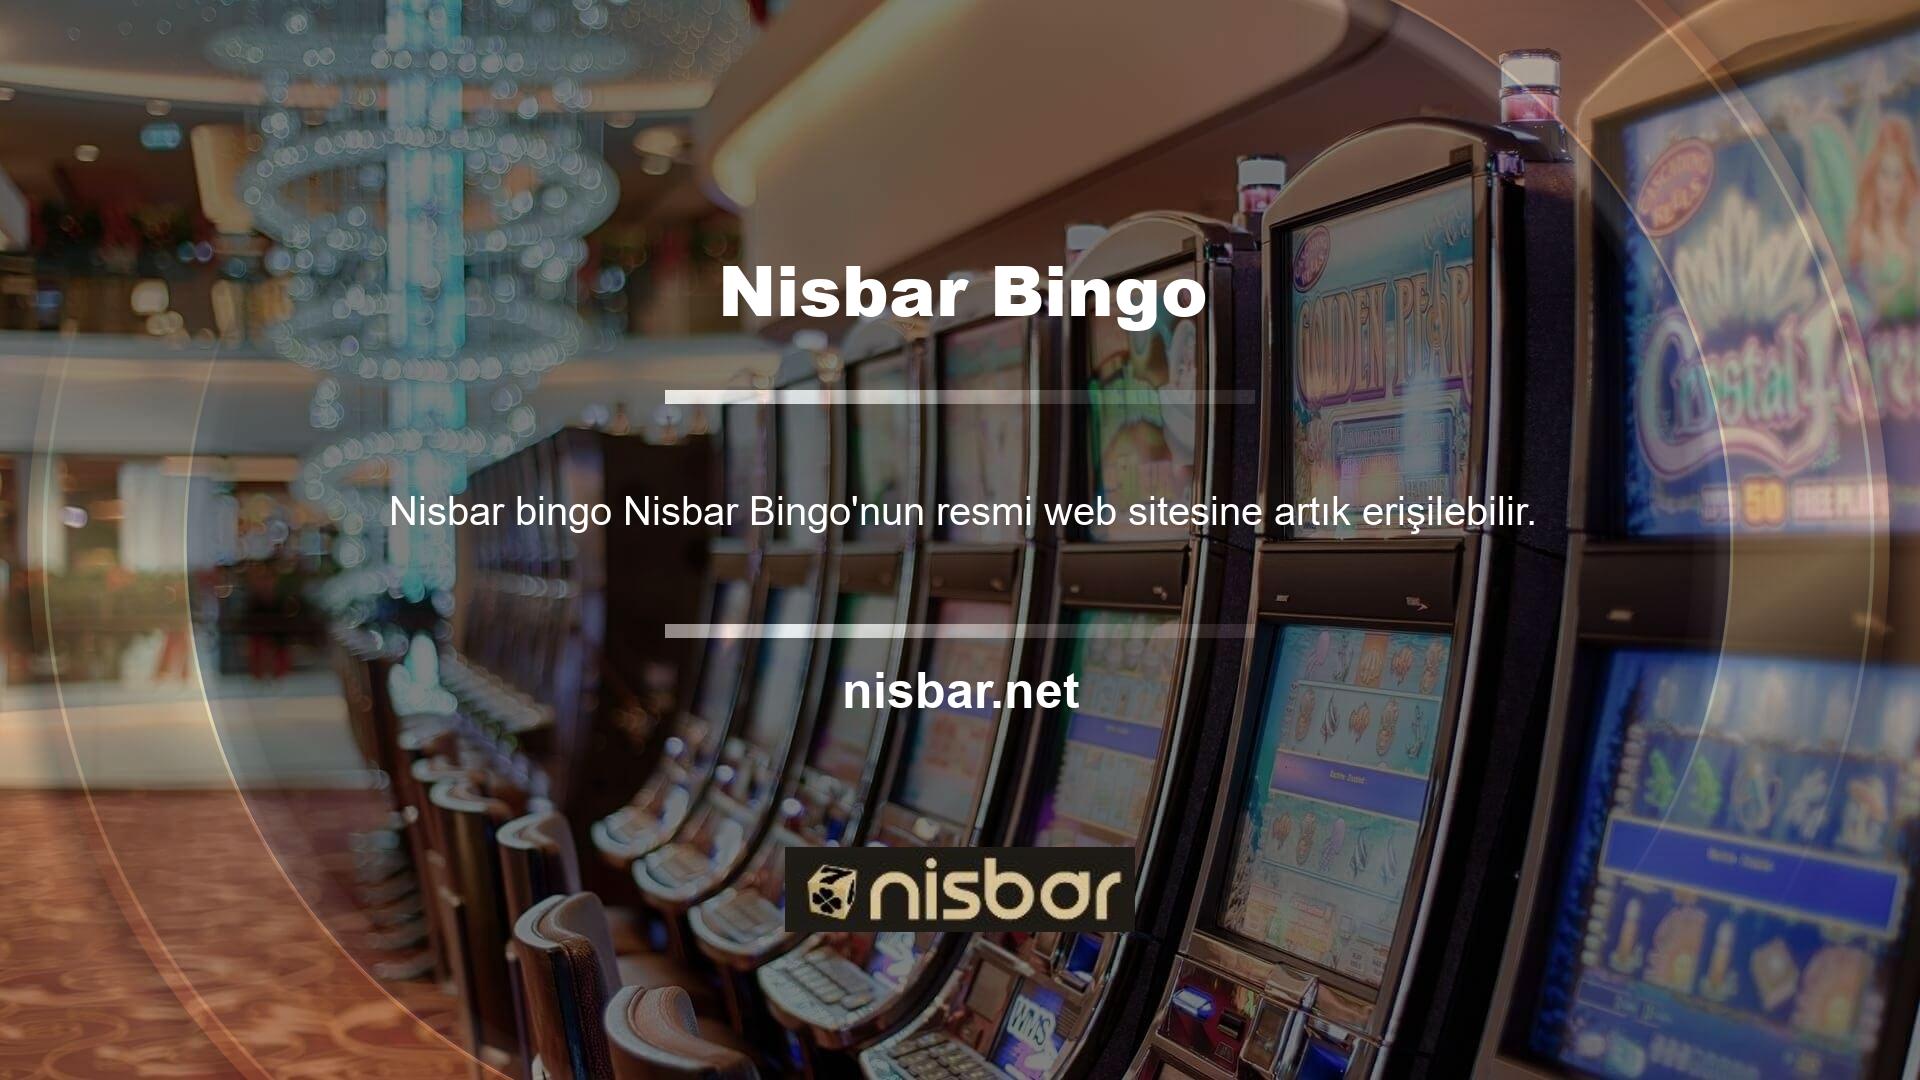 Nisbar bingo'nun çevrimiçi oyun deneyimi, sanal at yarışı Bingo'nun kullanımıyla kolaylaştırılmıştır